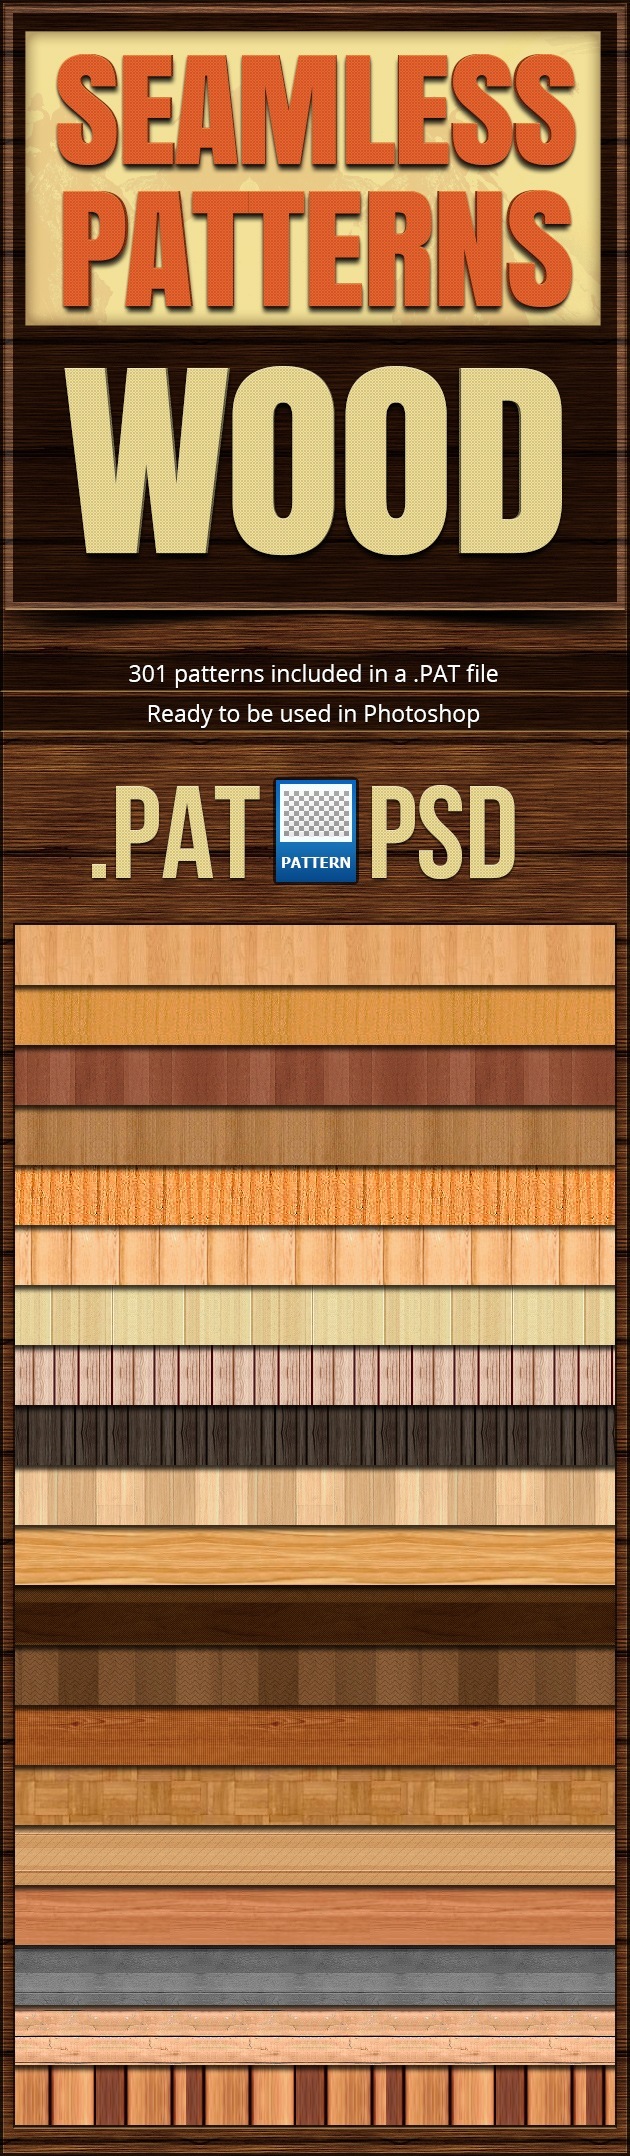 Seamless Patterns Wood